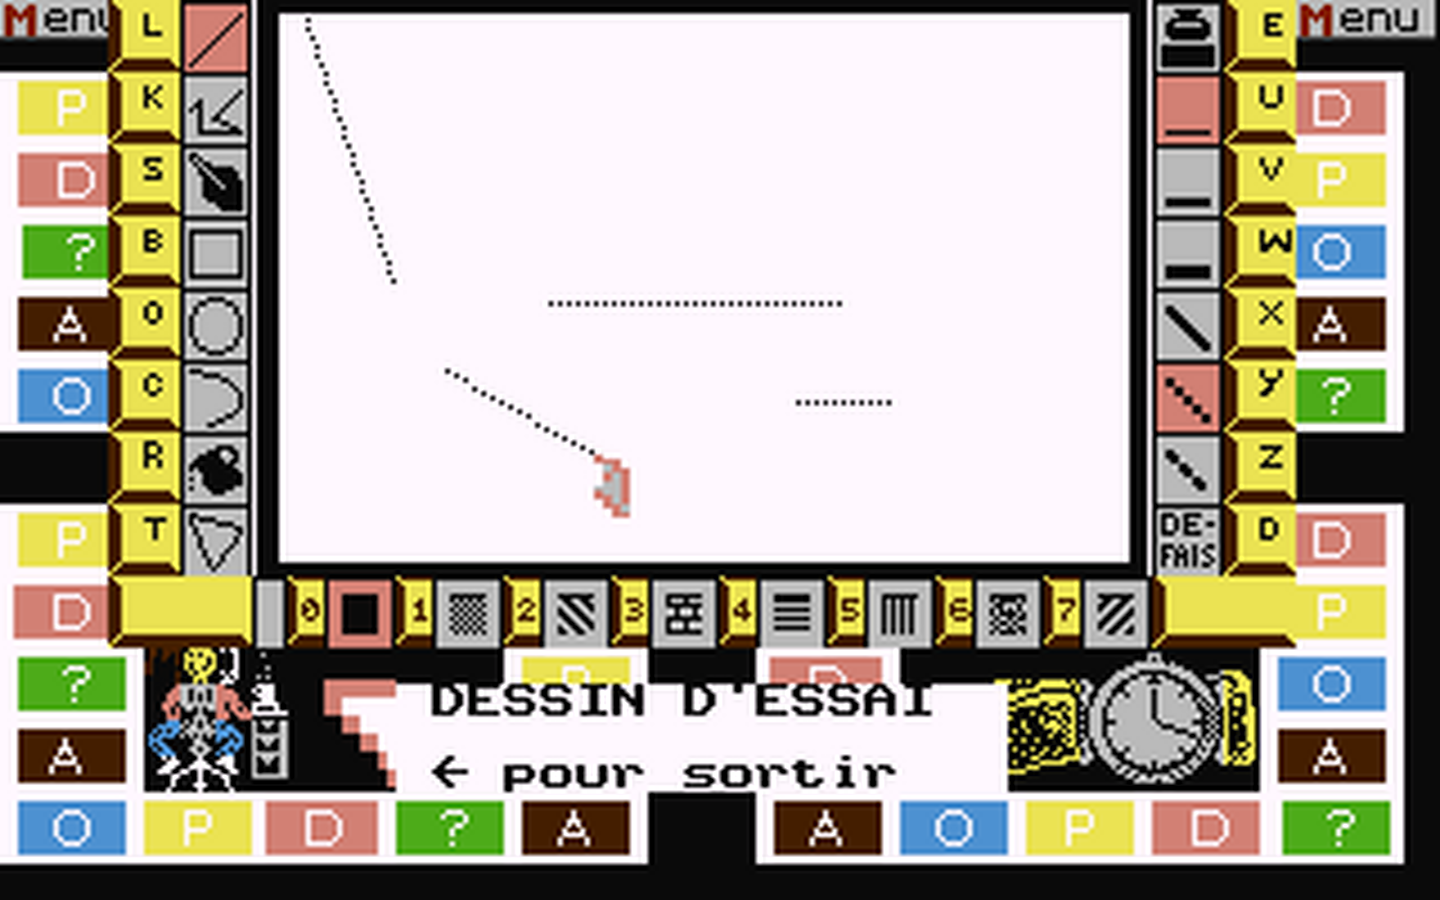 C64 GameBase Pictionary_-_Un_Mot_en_un_Coup_de_Crayon Domark 1989